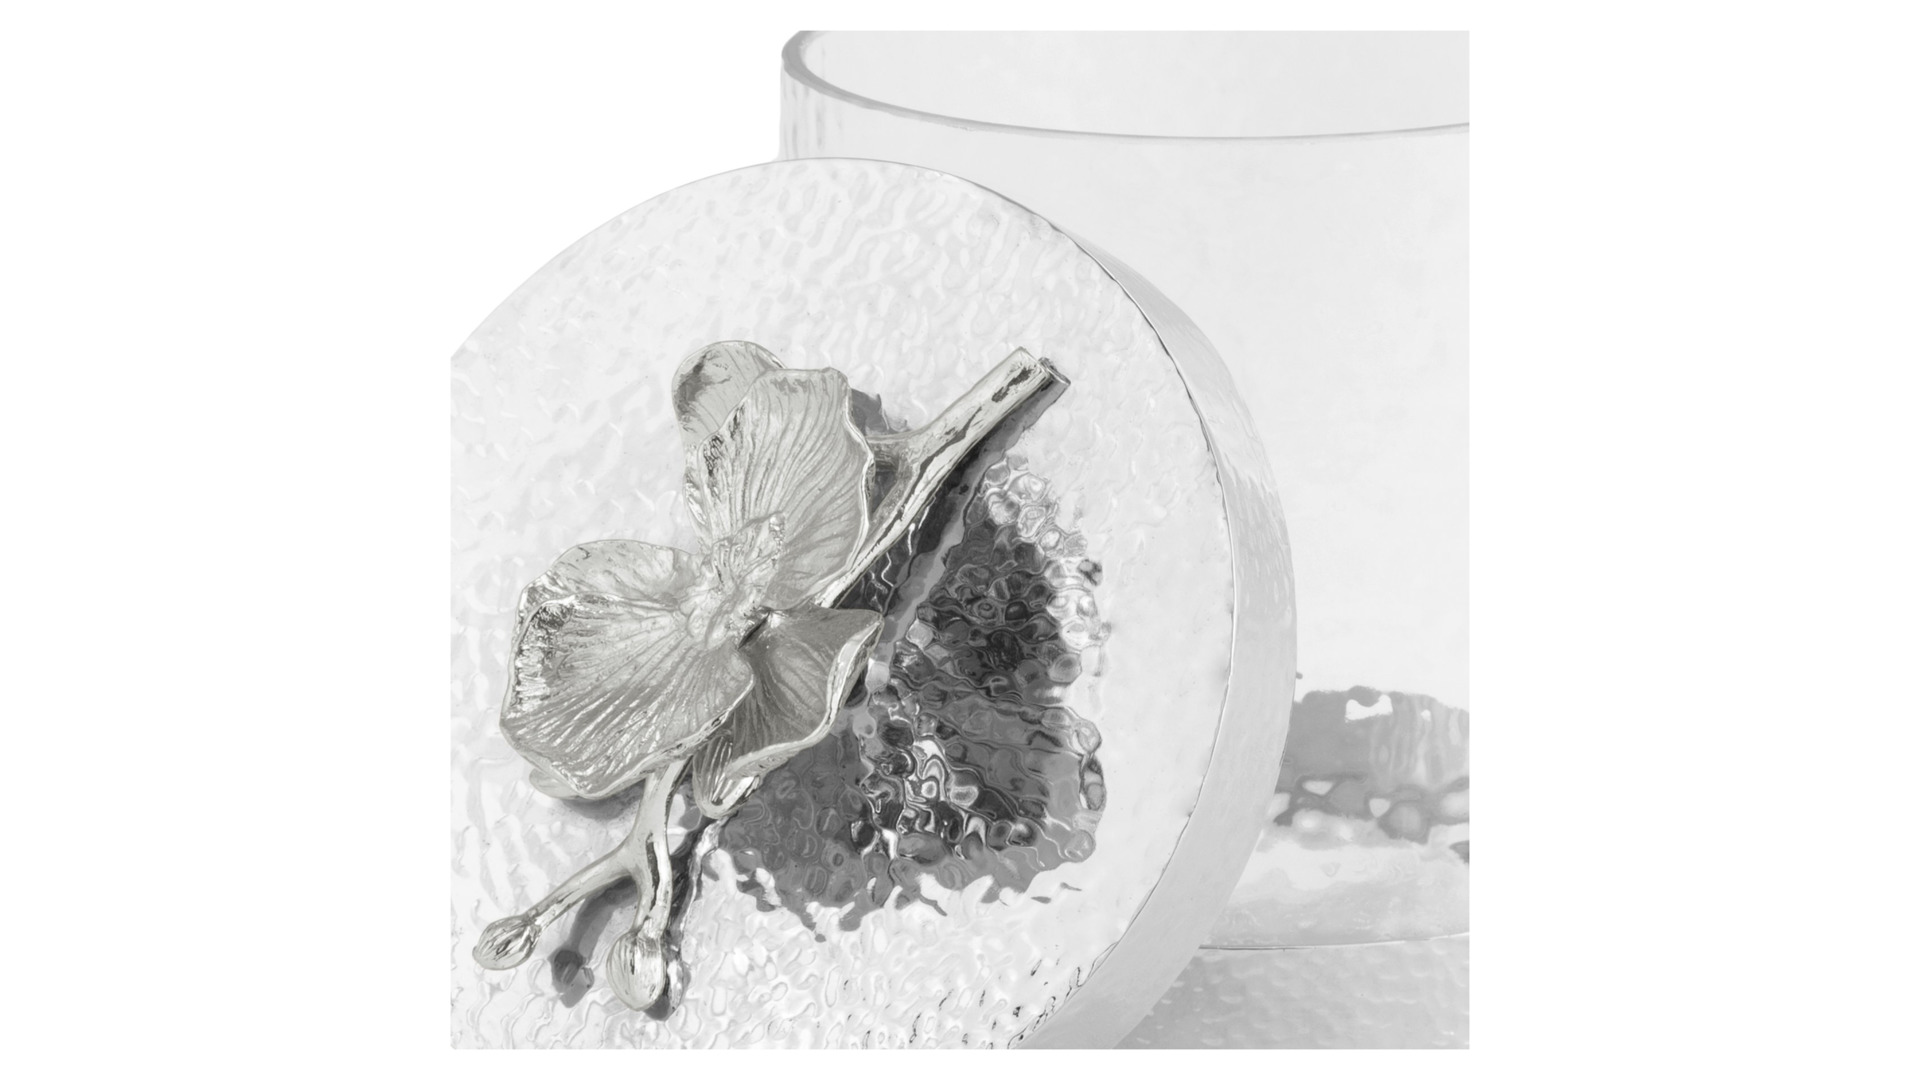 Банка для сыпучих продуктов малая Michael Aram Белая орхидея 22 см, стекло